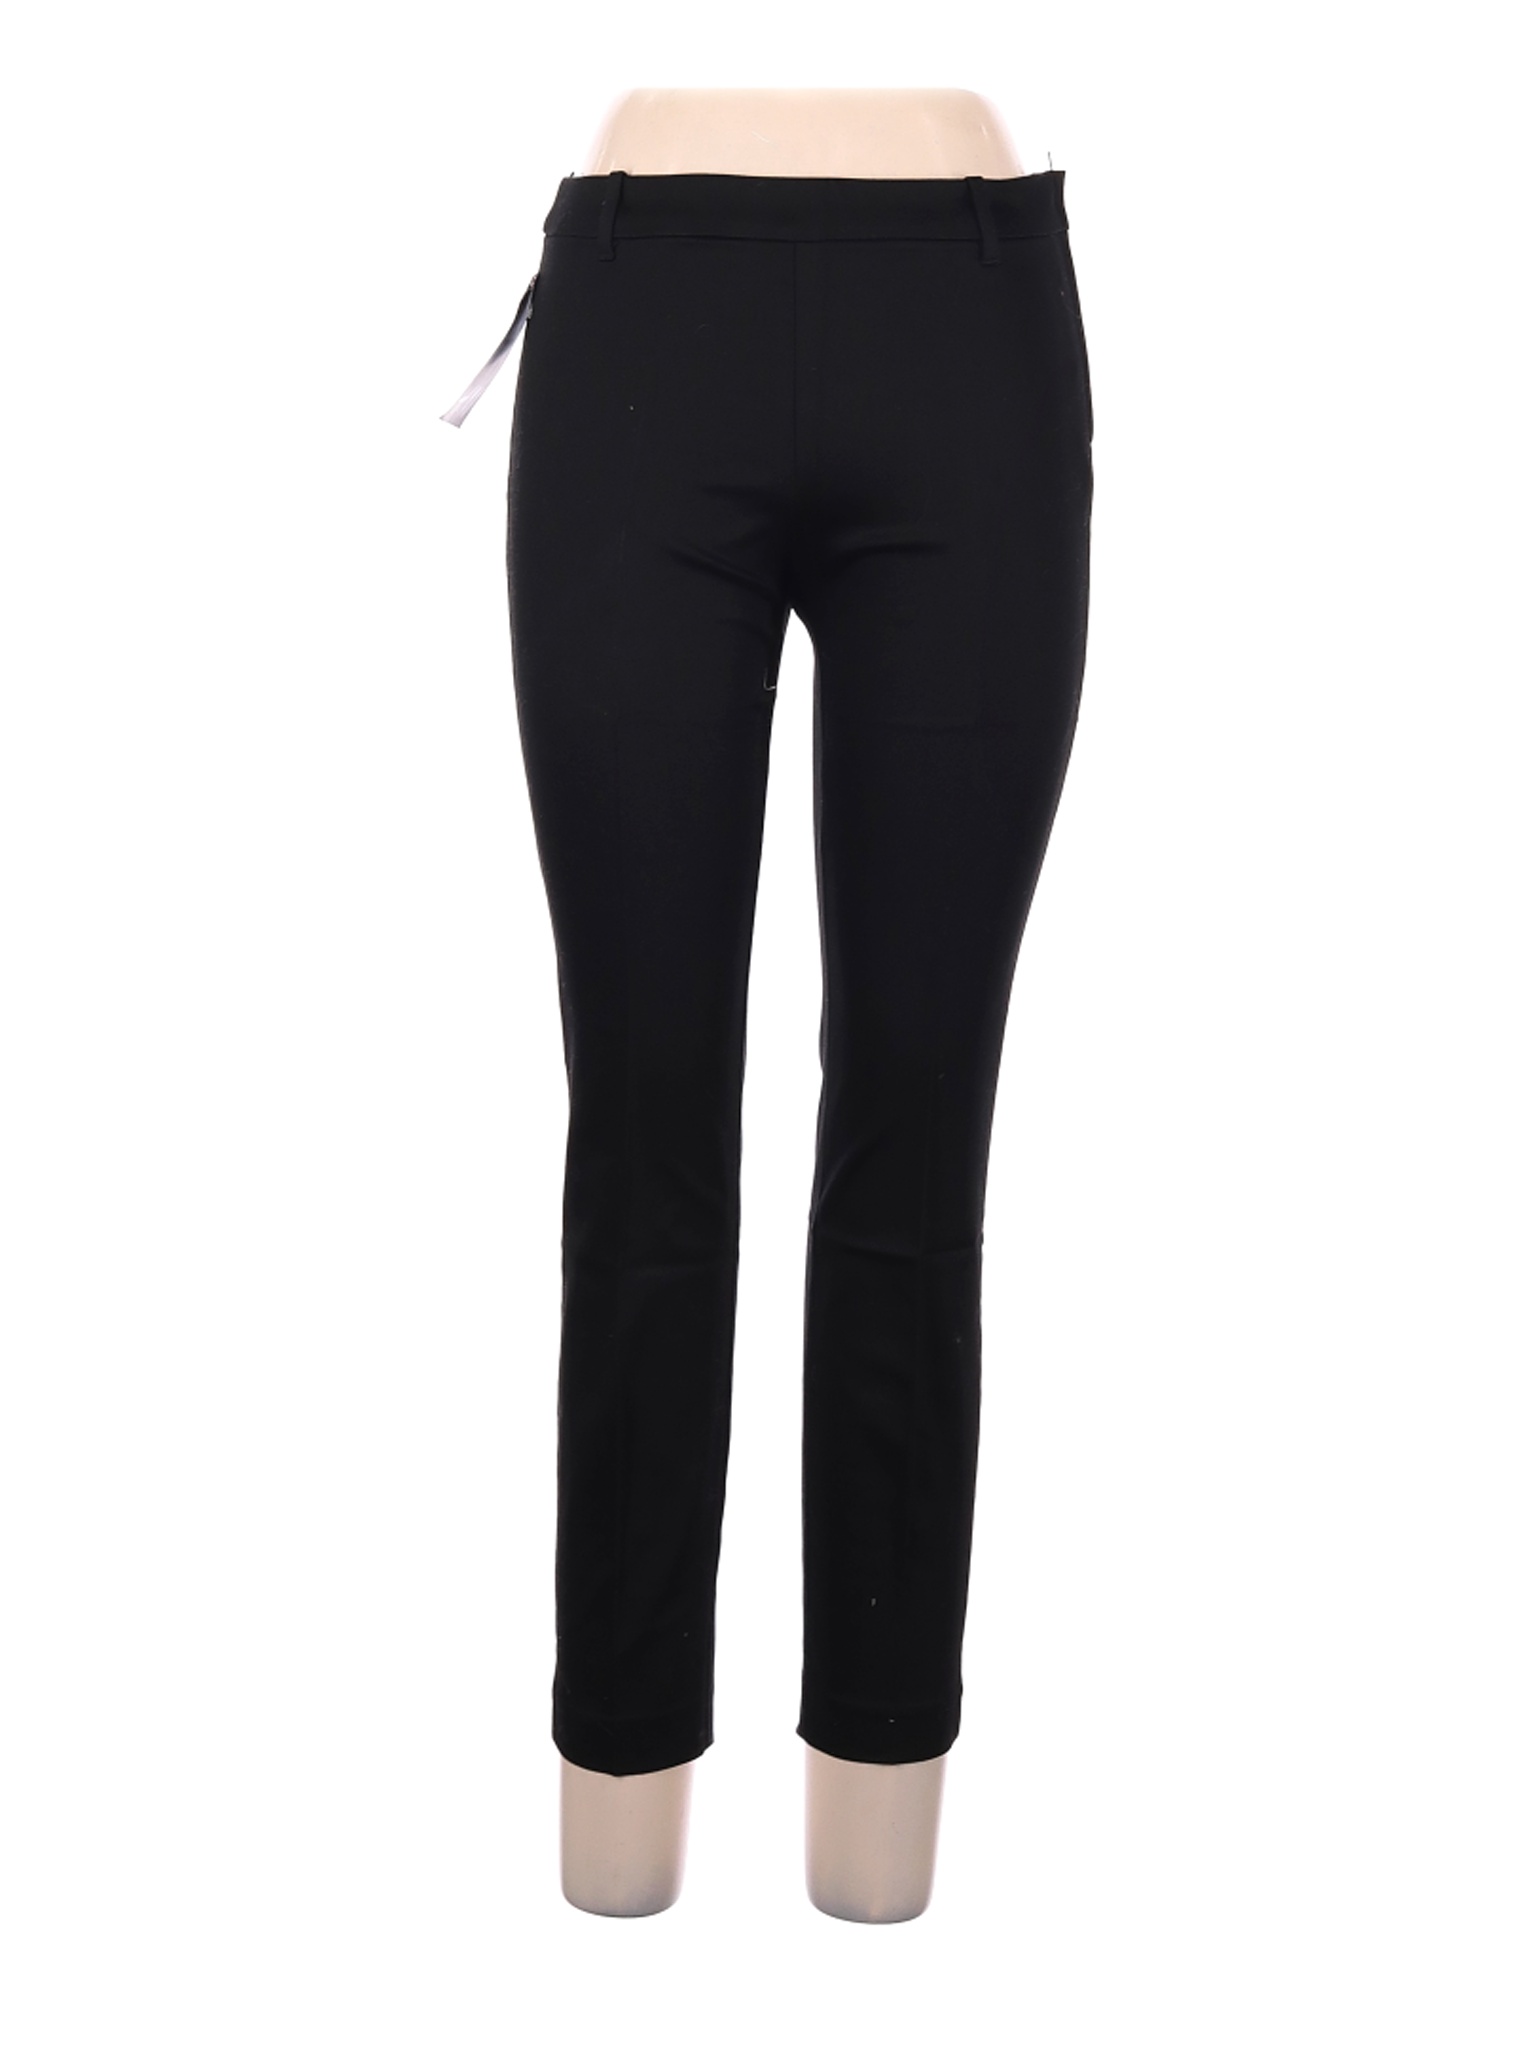 NWT H&M Women Black Dress Pants 8 | eBay